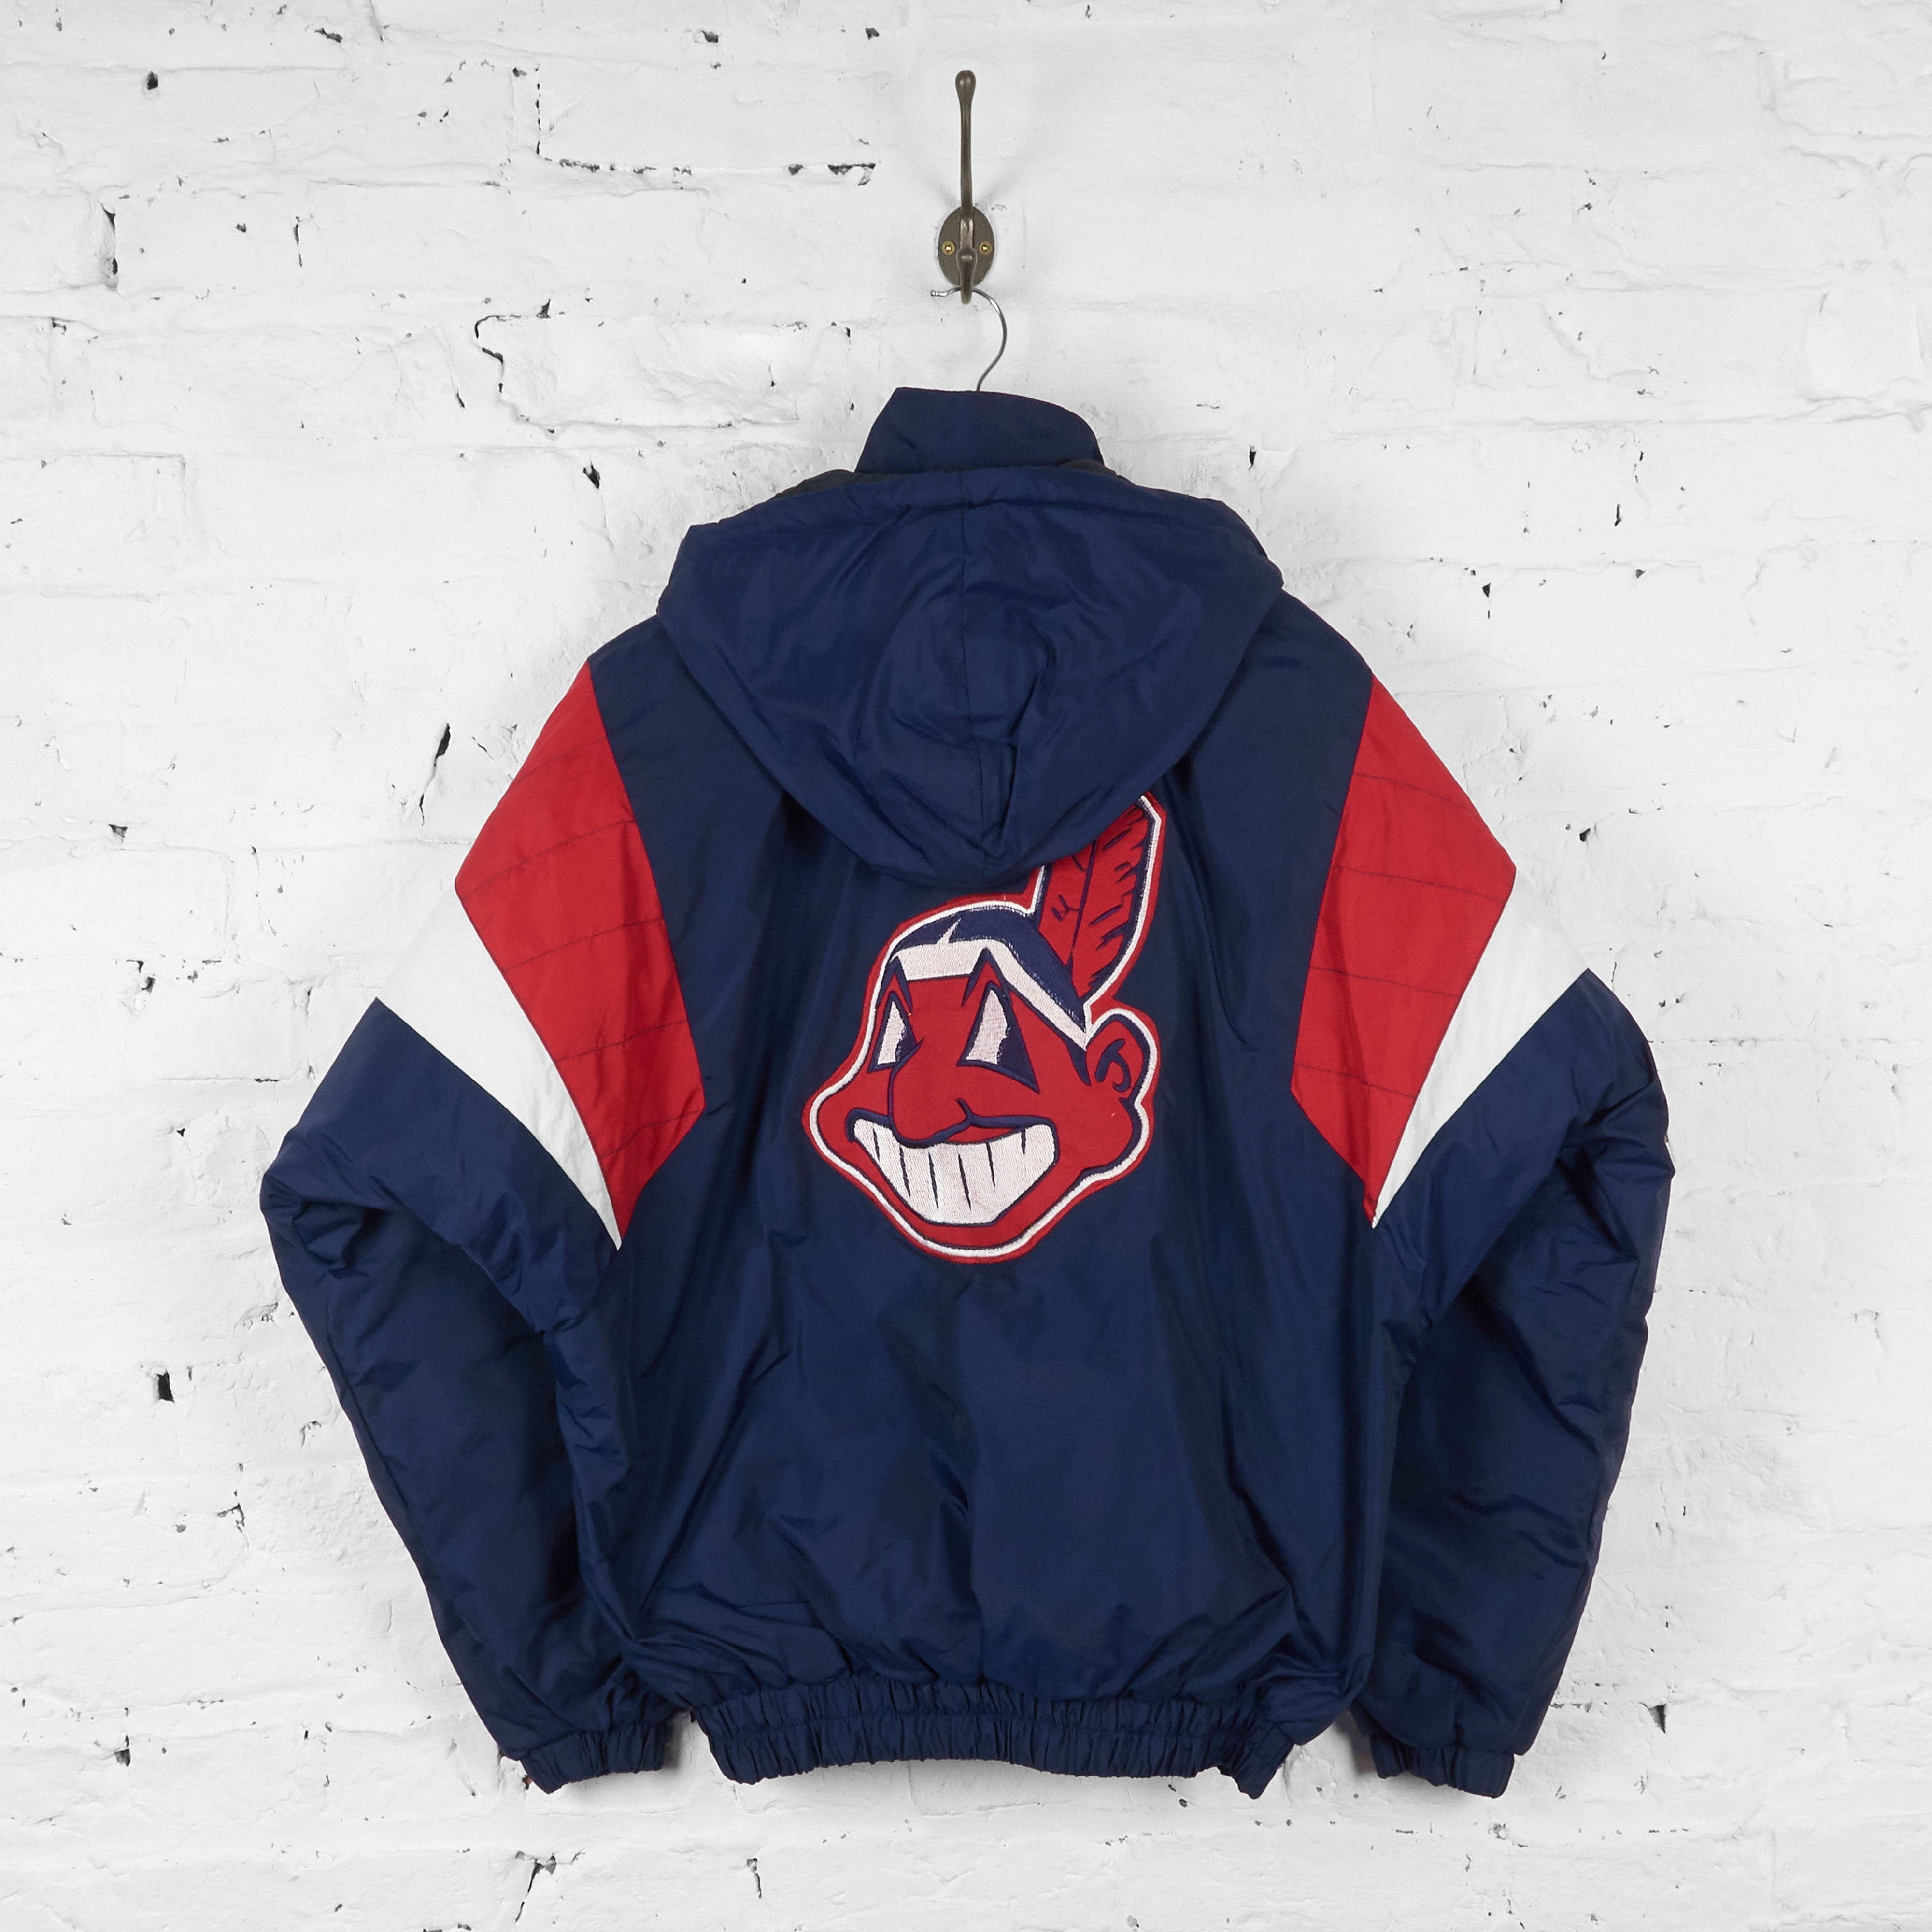 Cleveland Indians Starter Jacket pullover 海外 即決 - スキル、知識